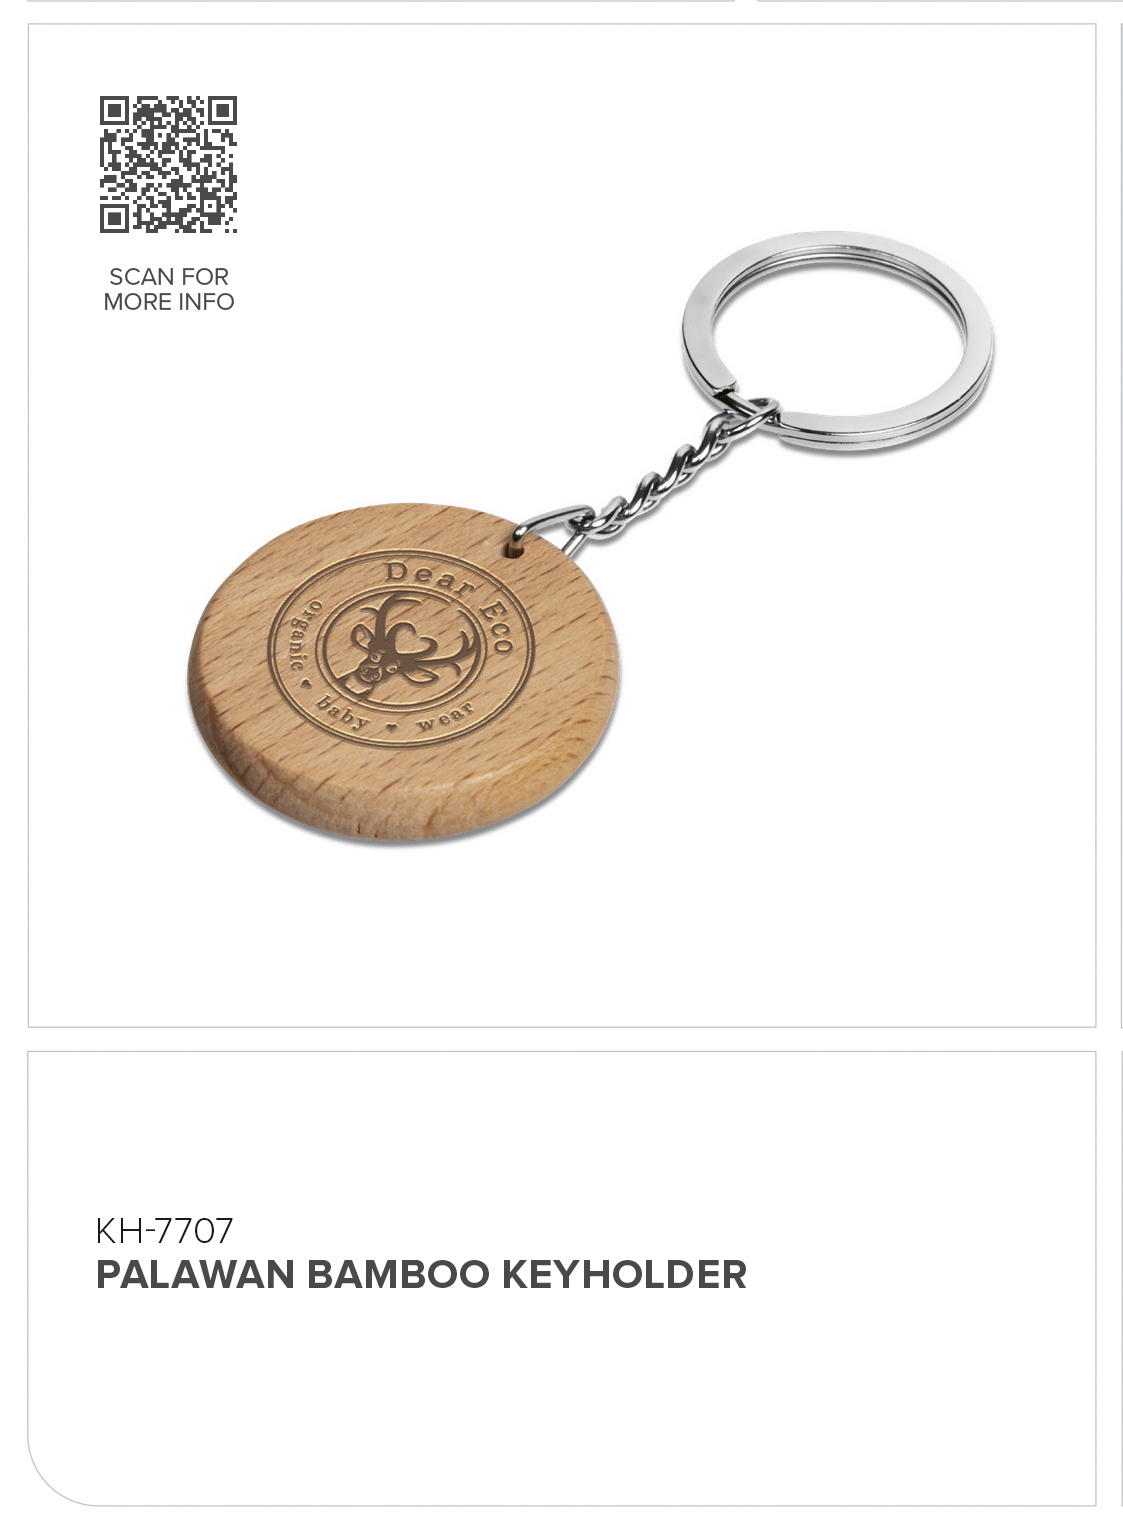 KH-7707 - Palawan Bamboo Keyholder - Catalogue Image